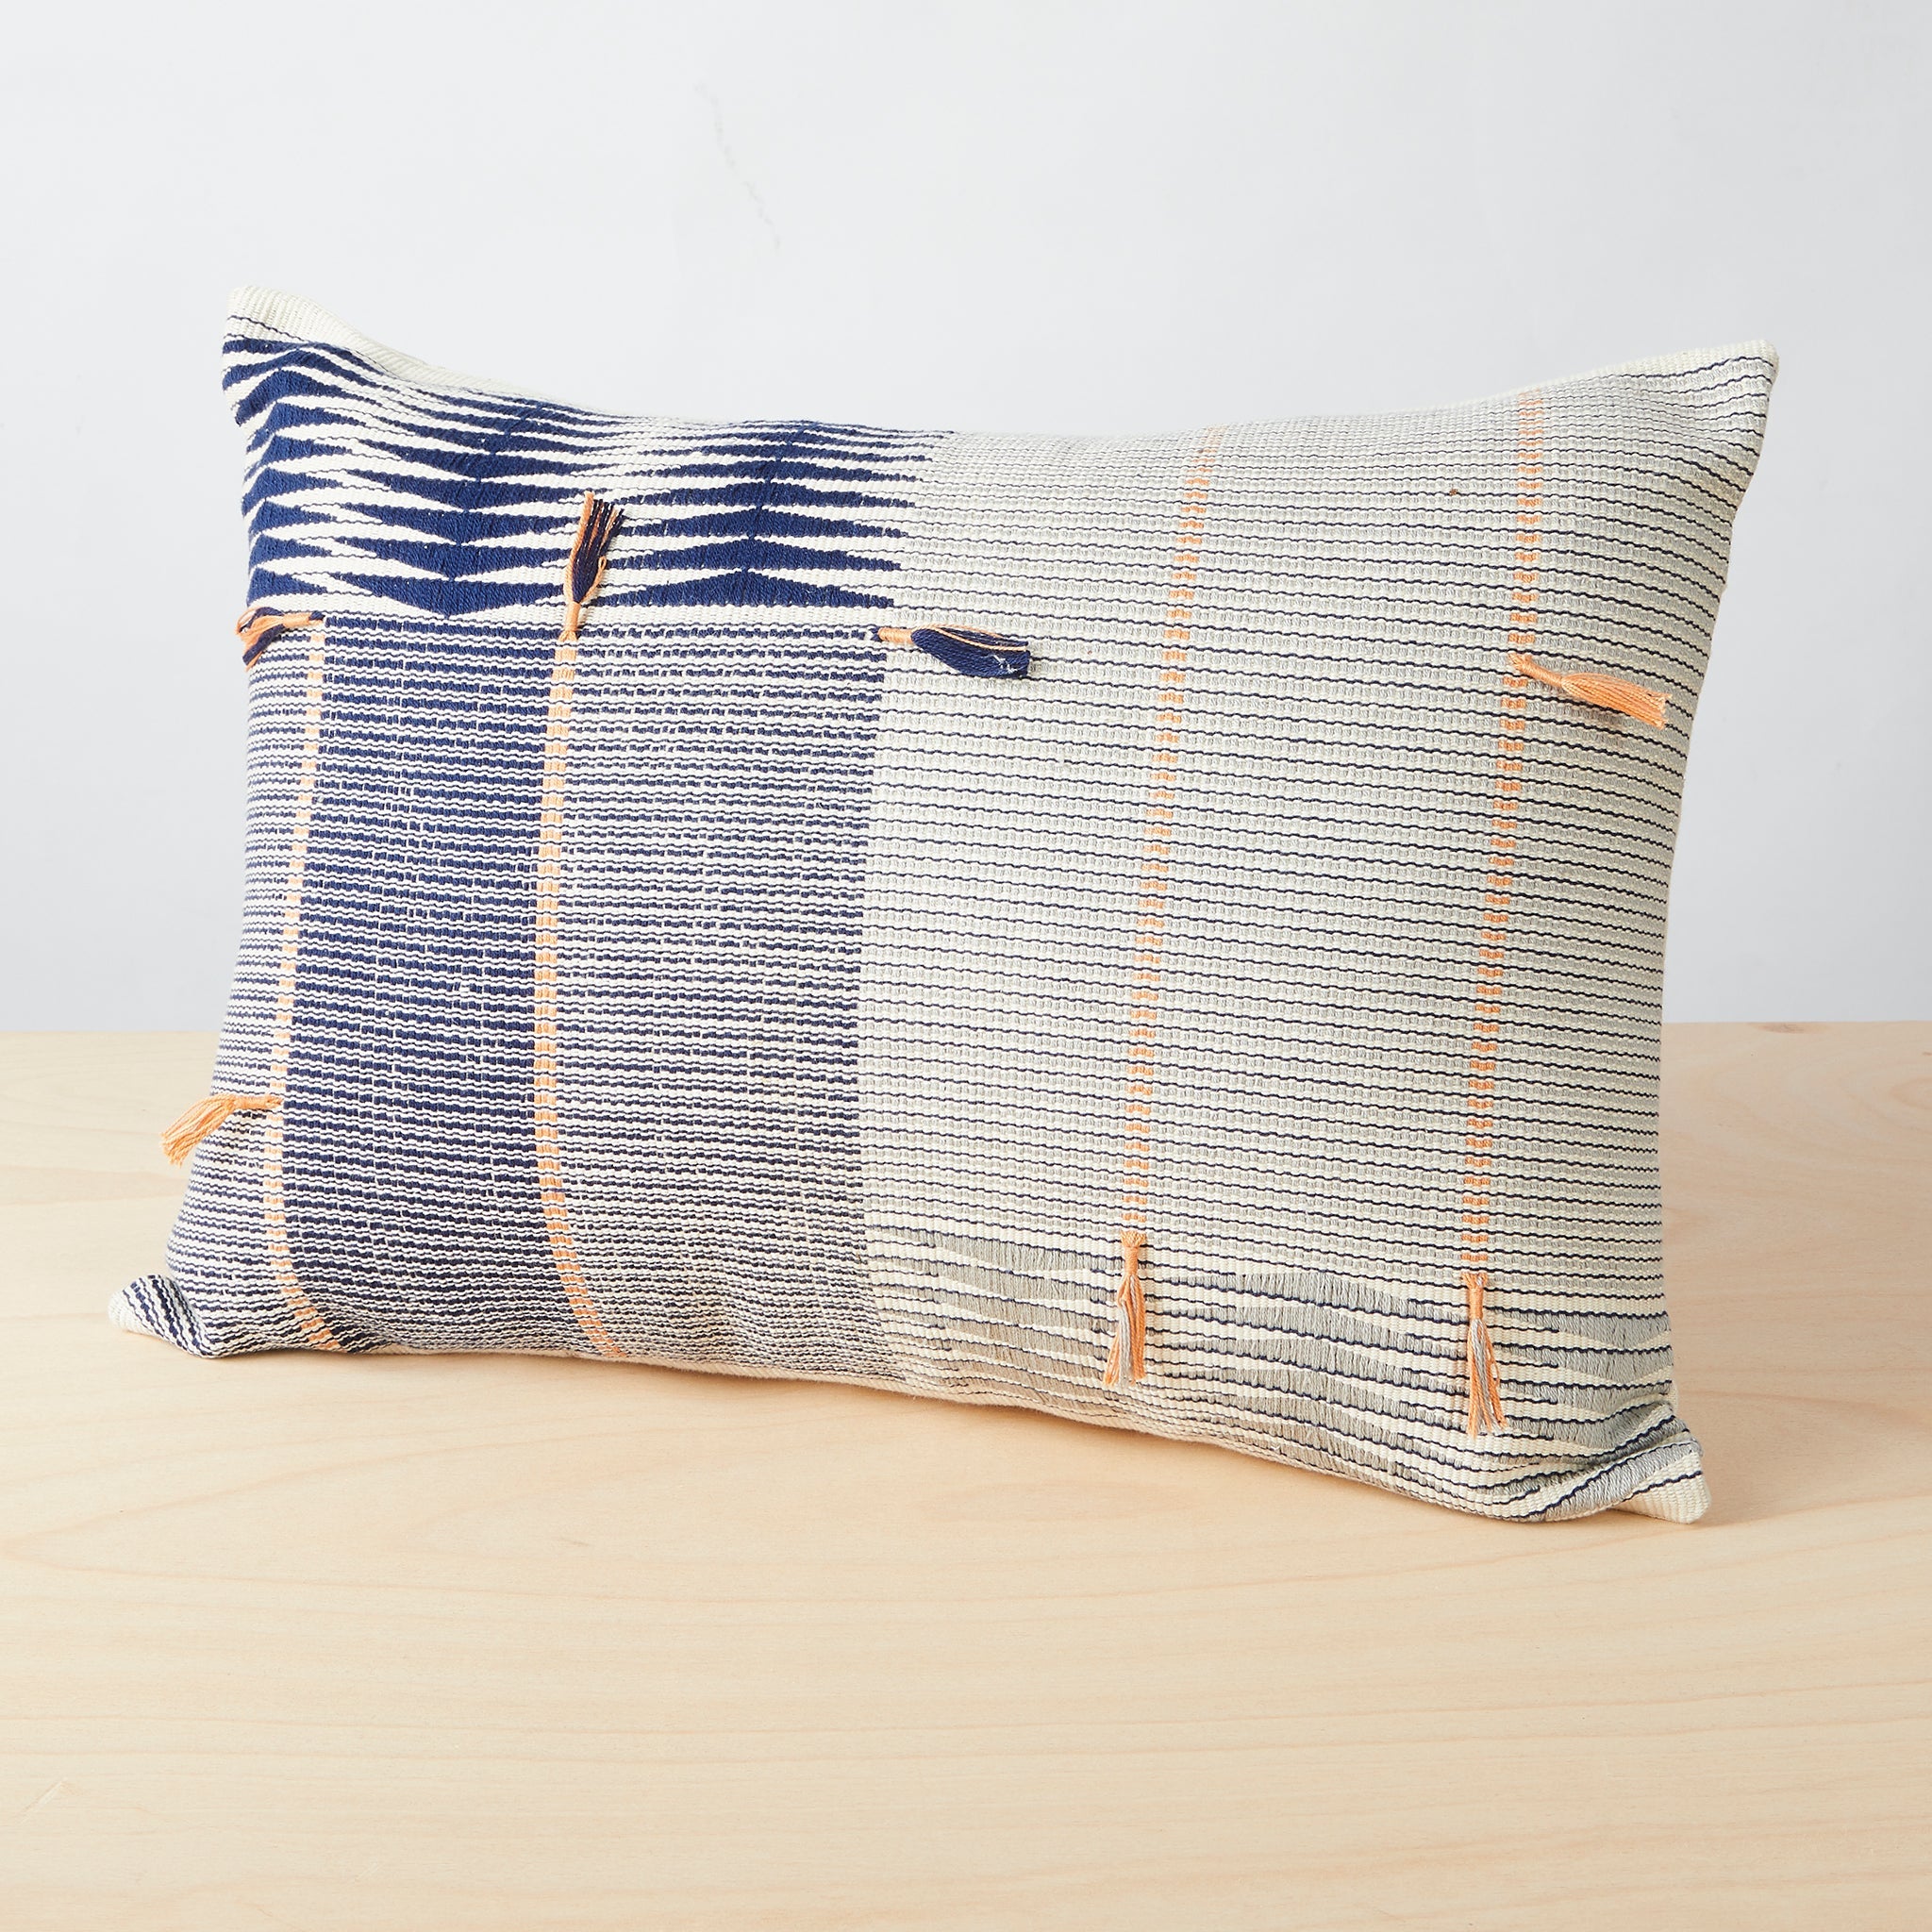 Hand-woven cushion Jotsoma 40x60 - By Native